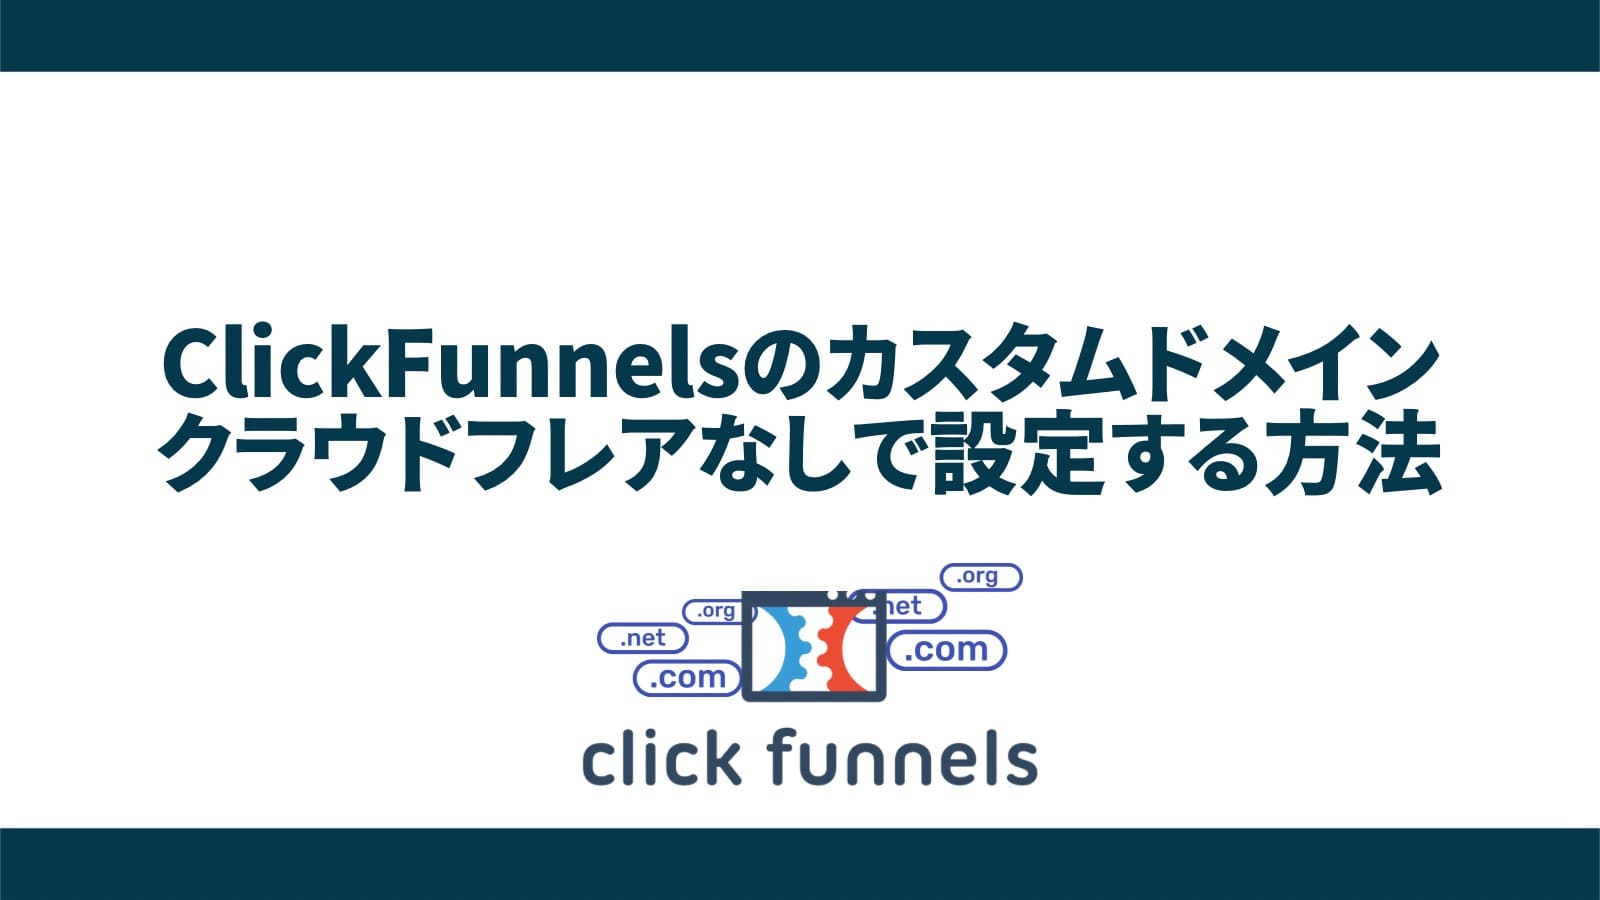 【簡単】ClickFunnelsでカスタムドメインをクラウドフレアなしで設定する方法【クリックファネル】